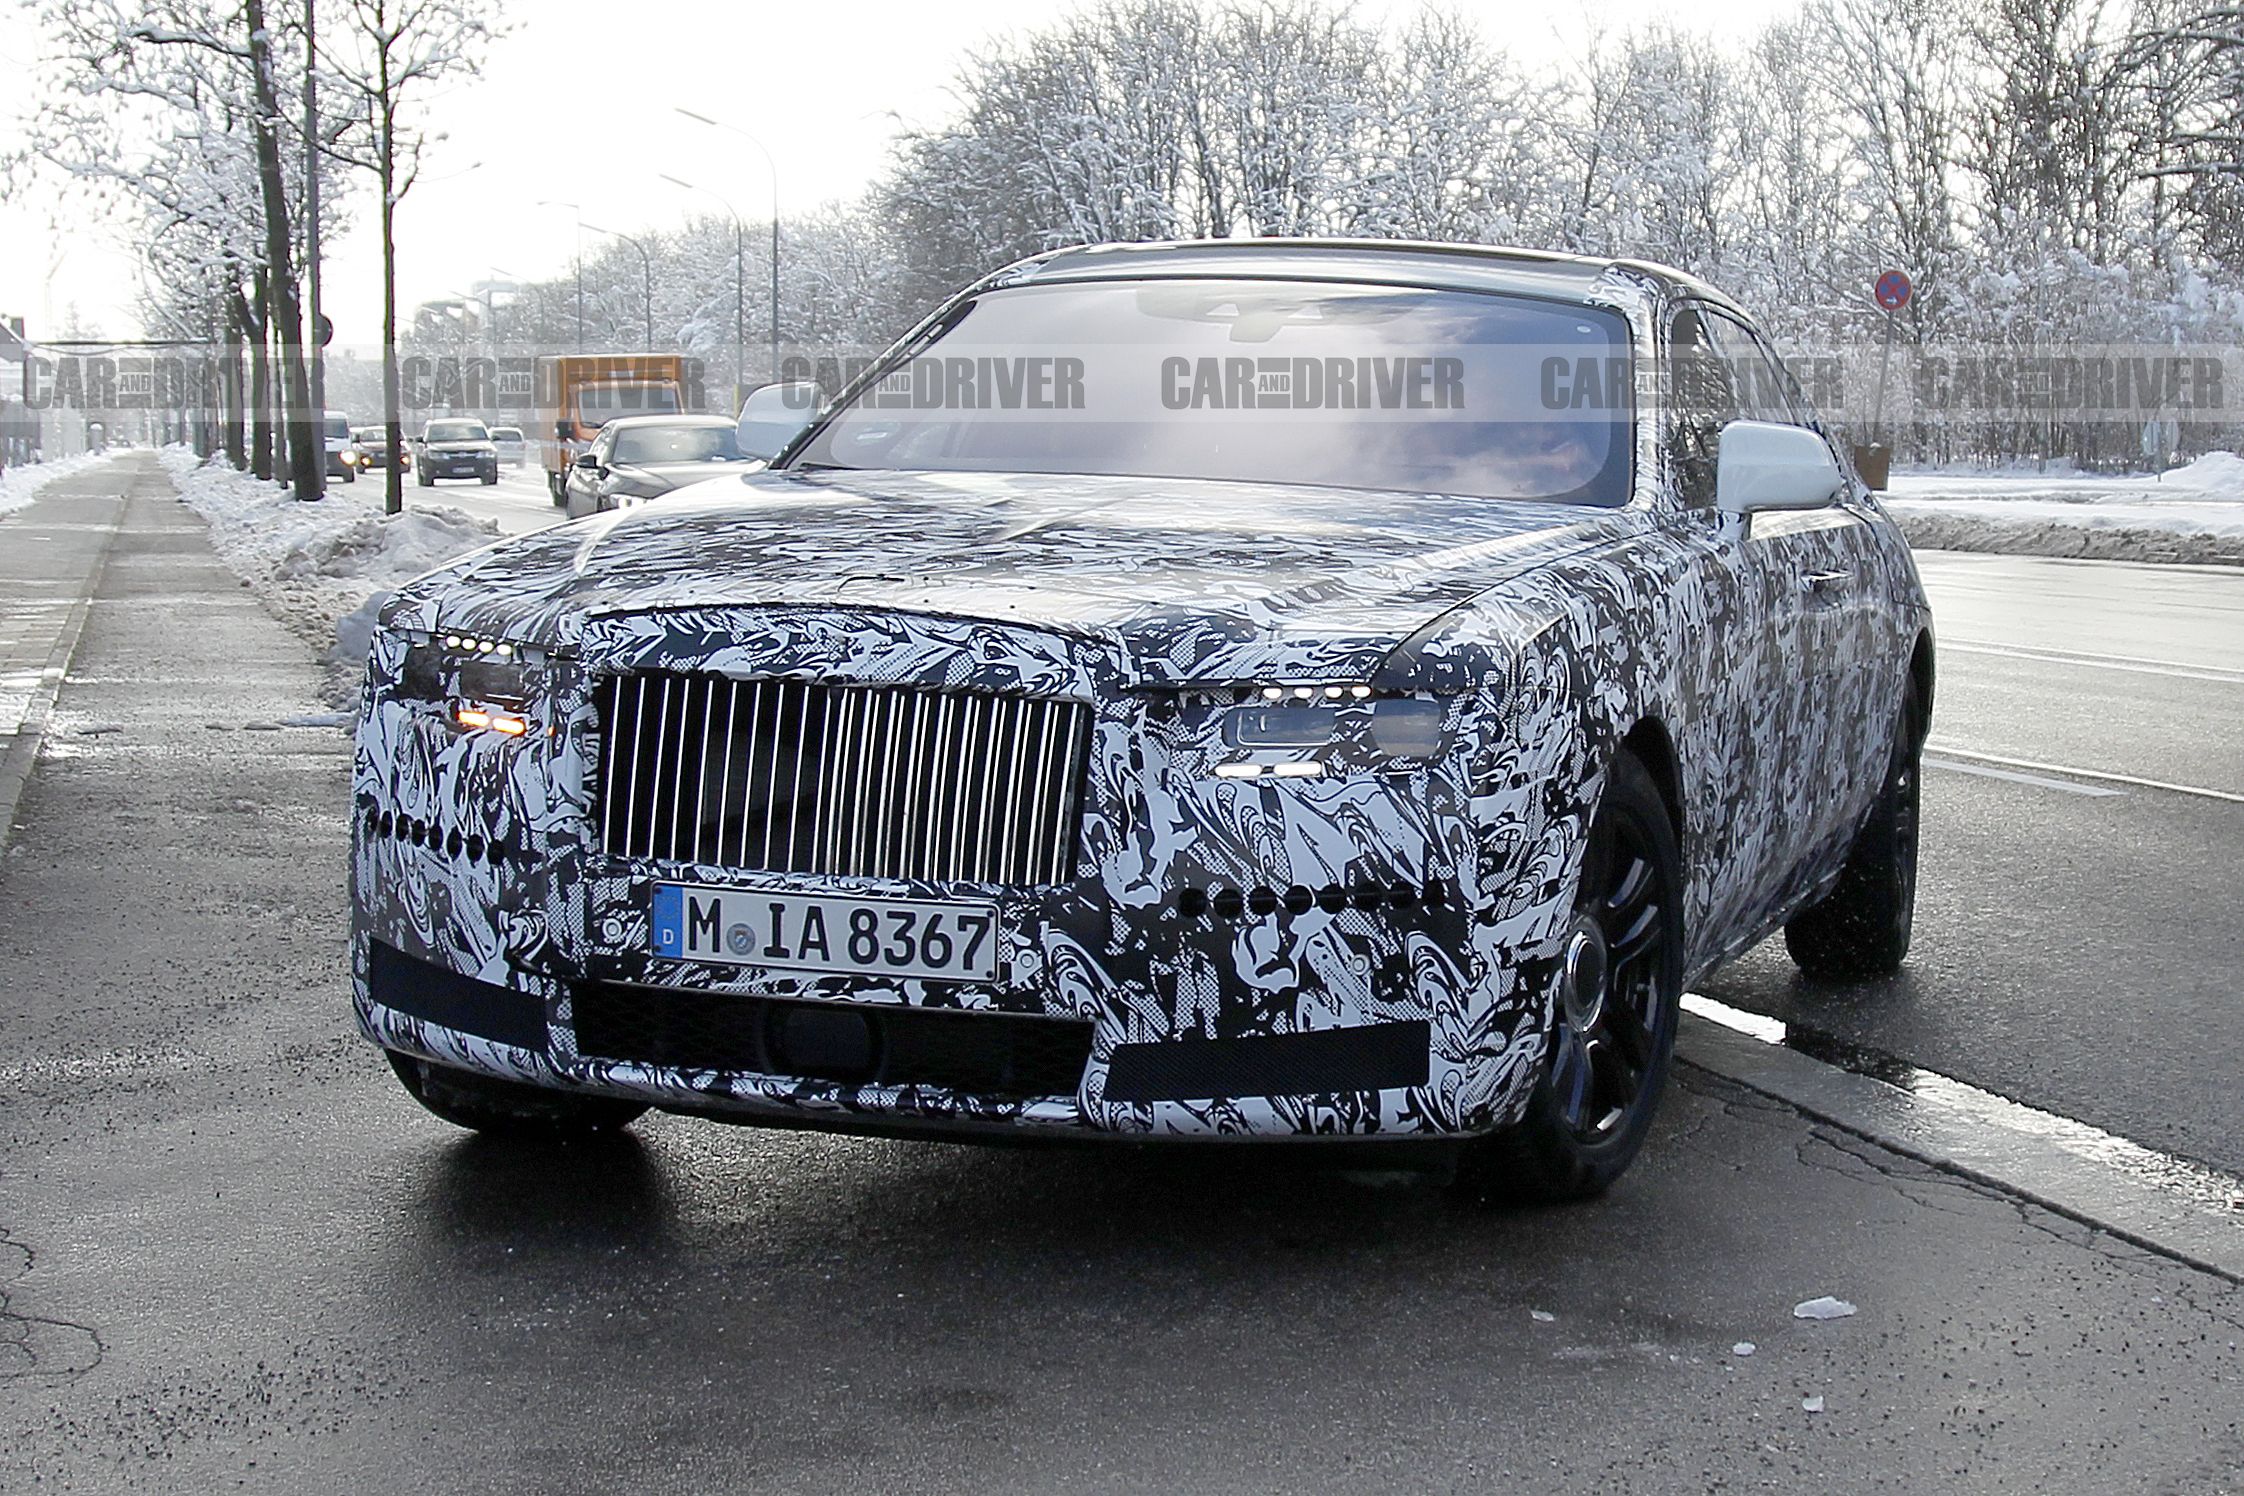 2020 Rolls-Royce Ghost: Renderings + Rumors